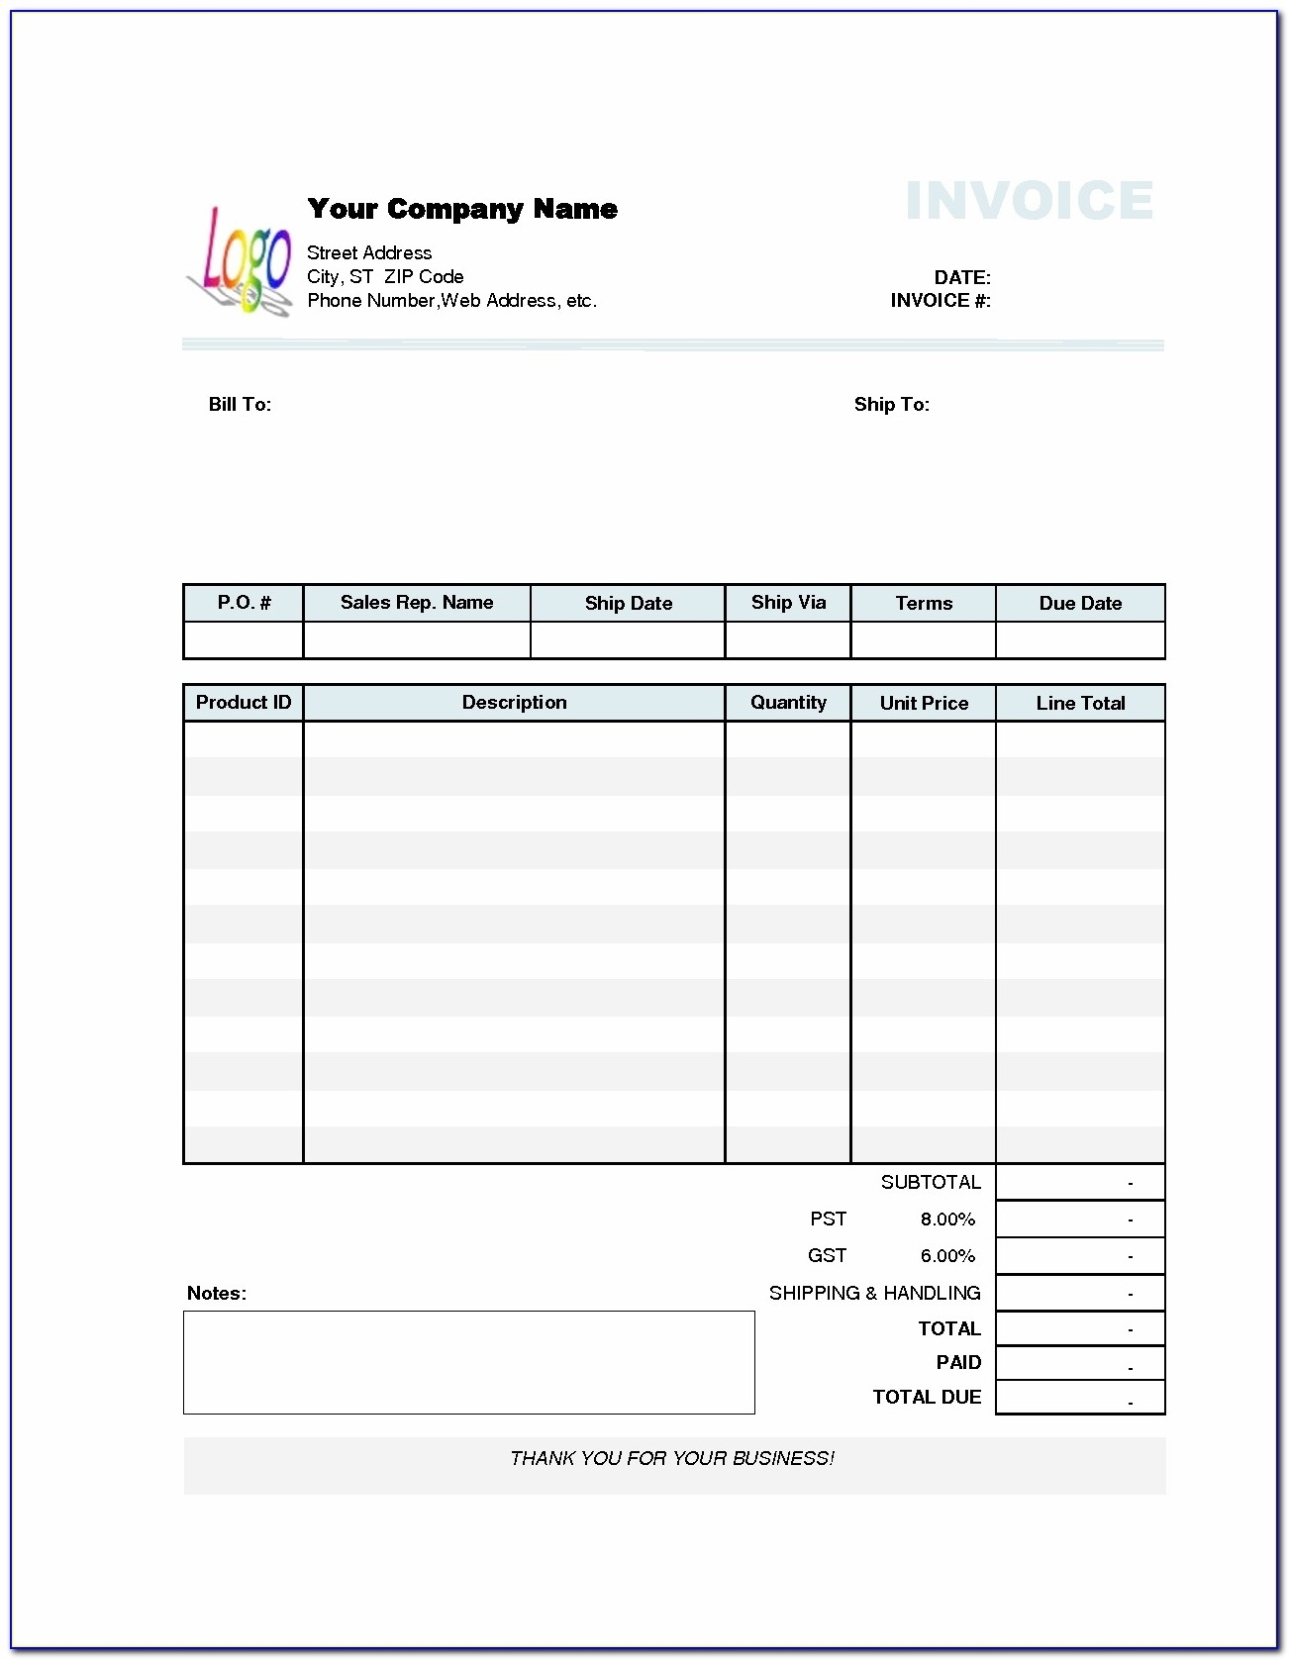 Sample Quickbooks Invoice Template Ideas Excel Simple Free Quickbooks Invoice Templates – Form For Quickbooks Invoice Template Excel